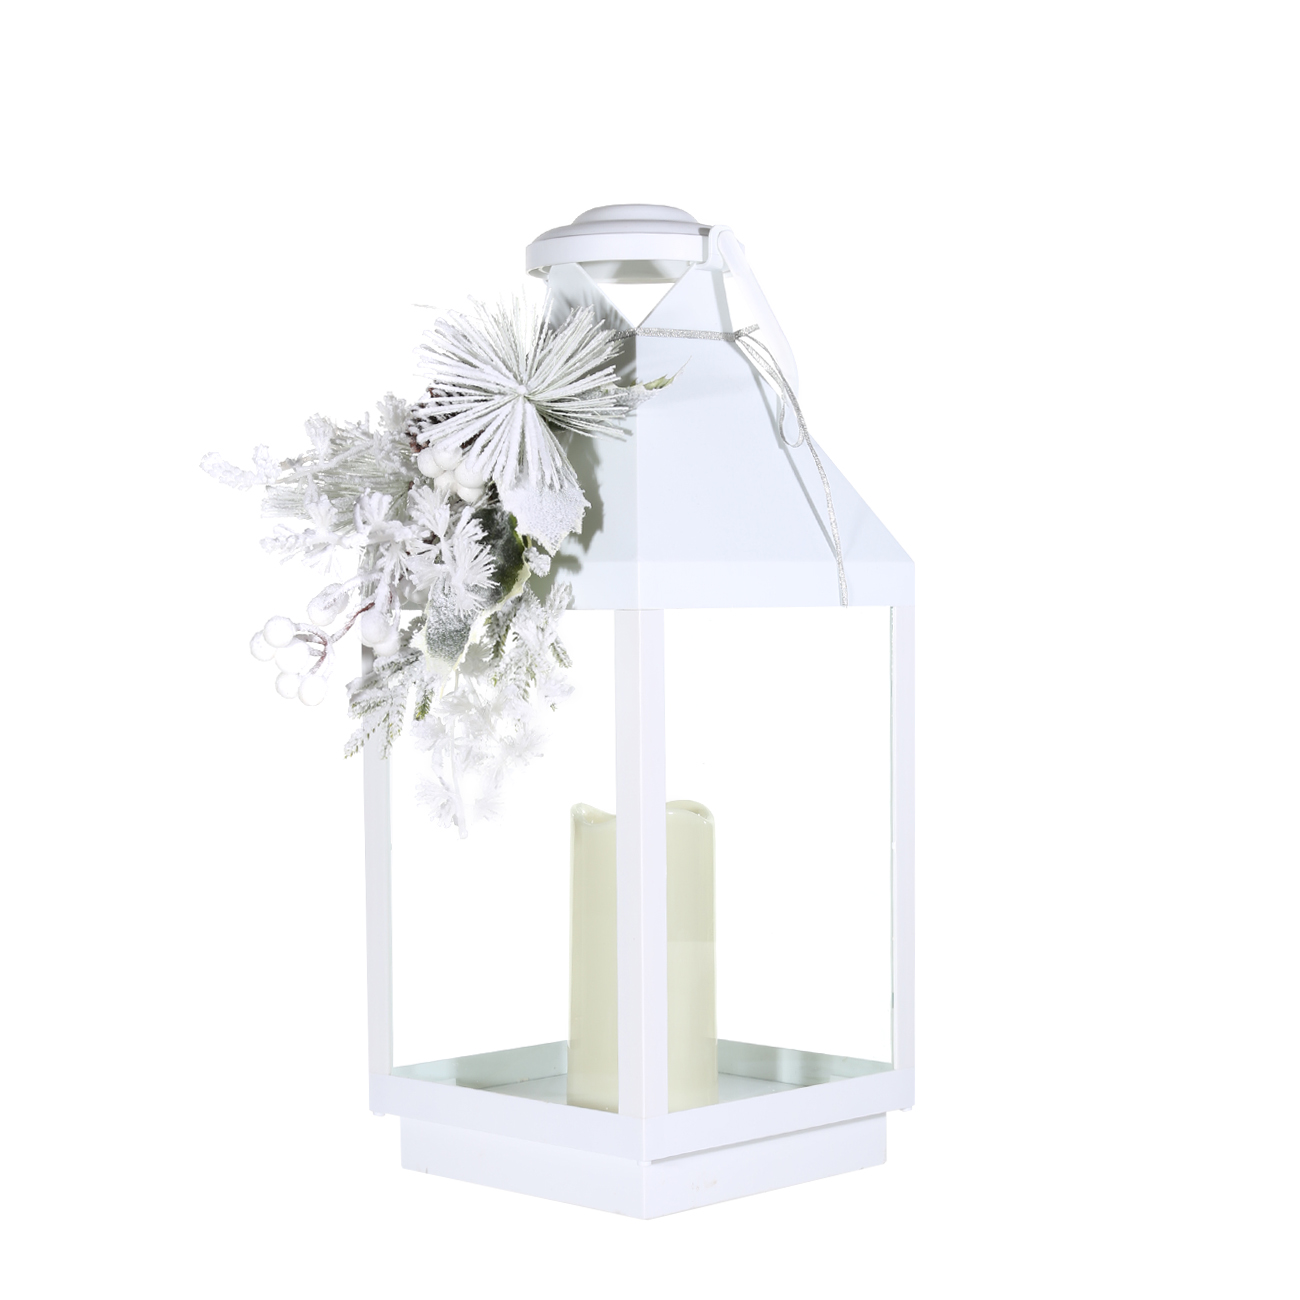 Светильник декоративный, 47 см, пластик, белый, фонарь со свечой, Ветка, Winter style - фото 1